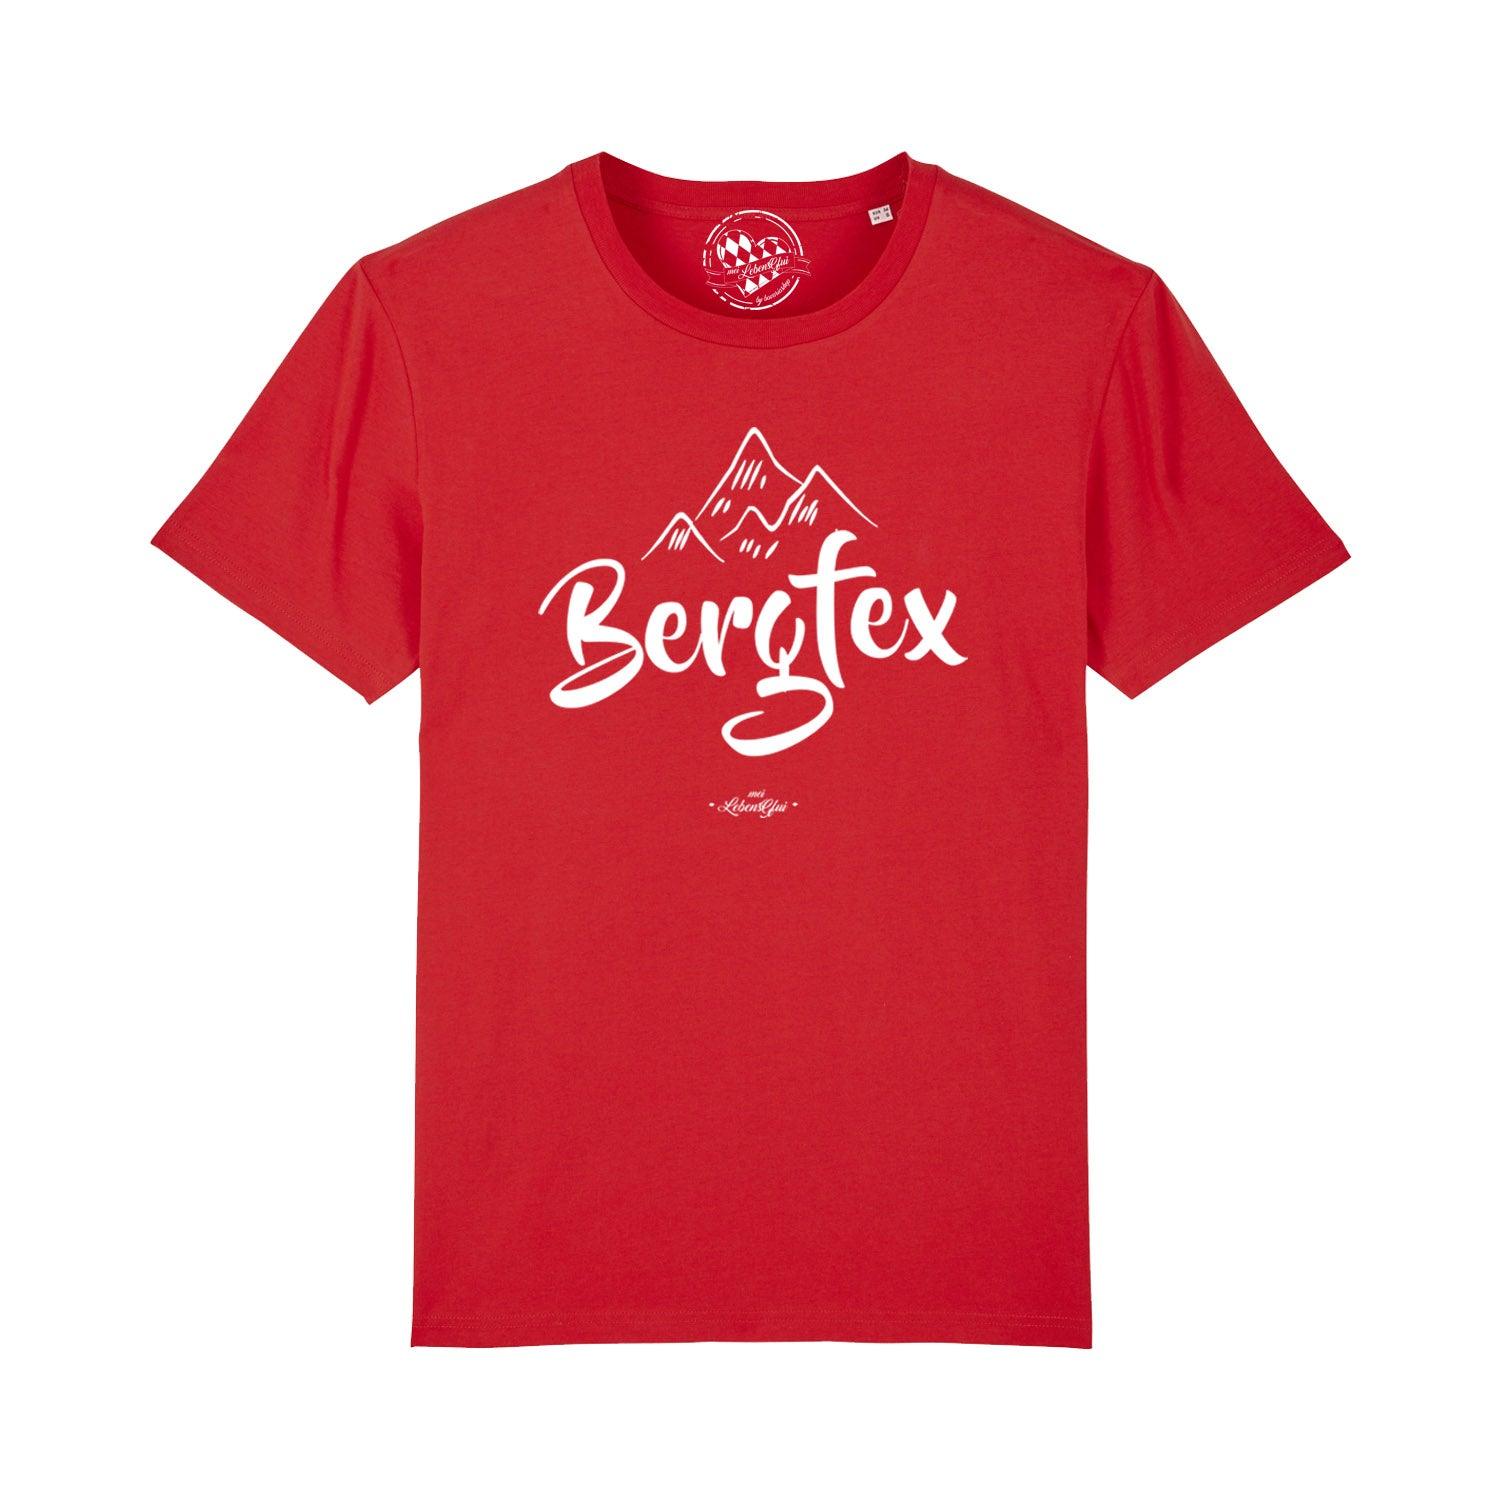 Herren T-Shirt "Bergfex" - bavariashop - mei LebensGfui